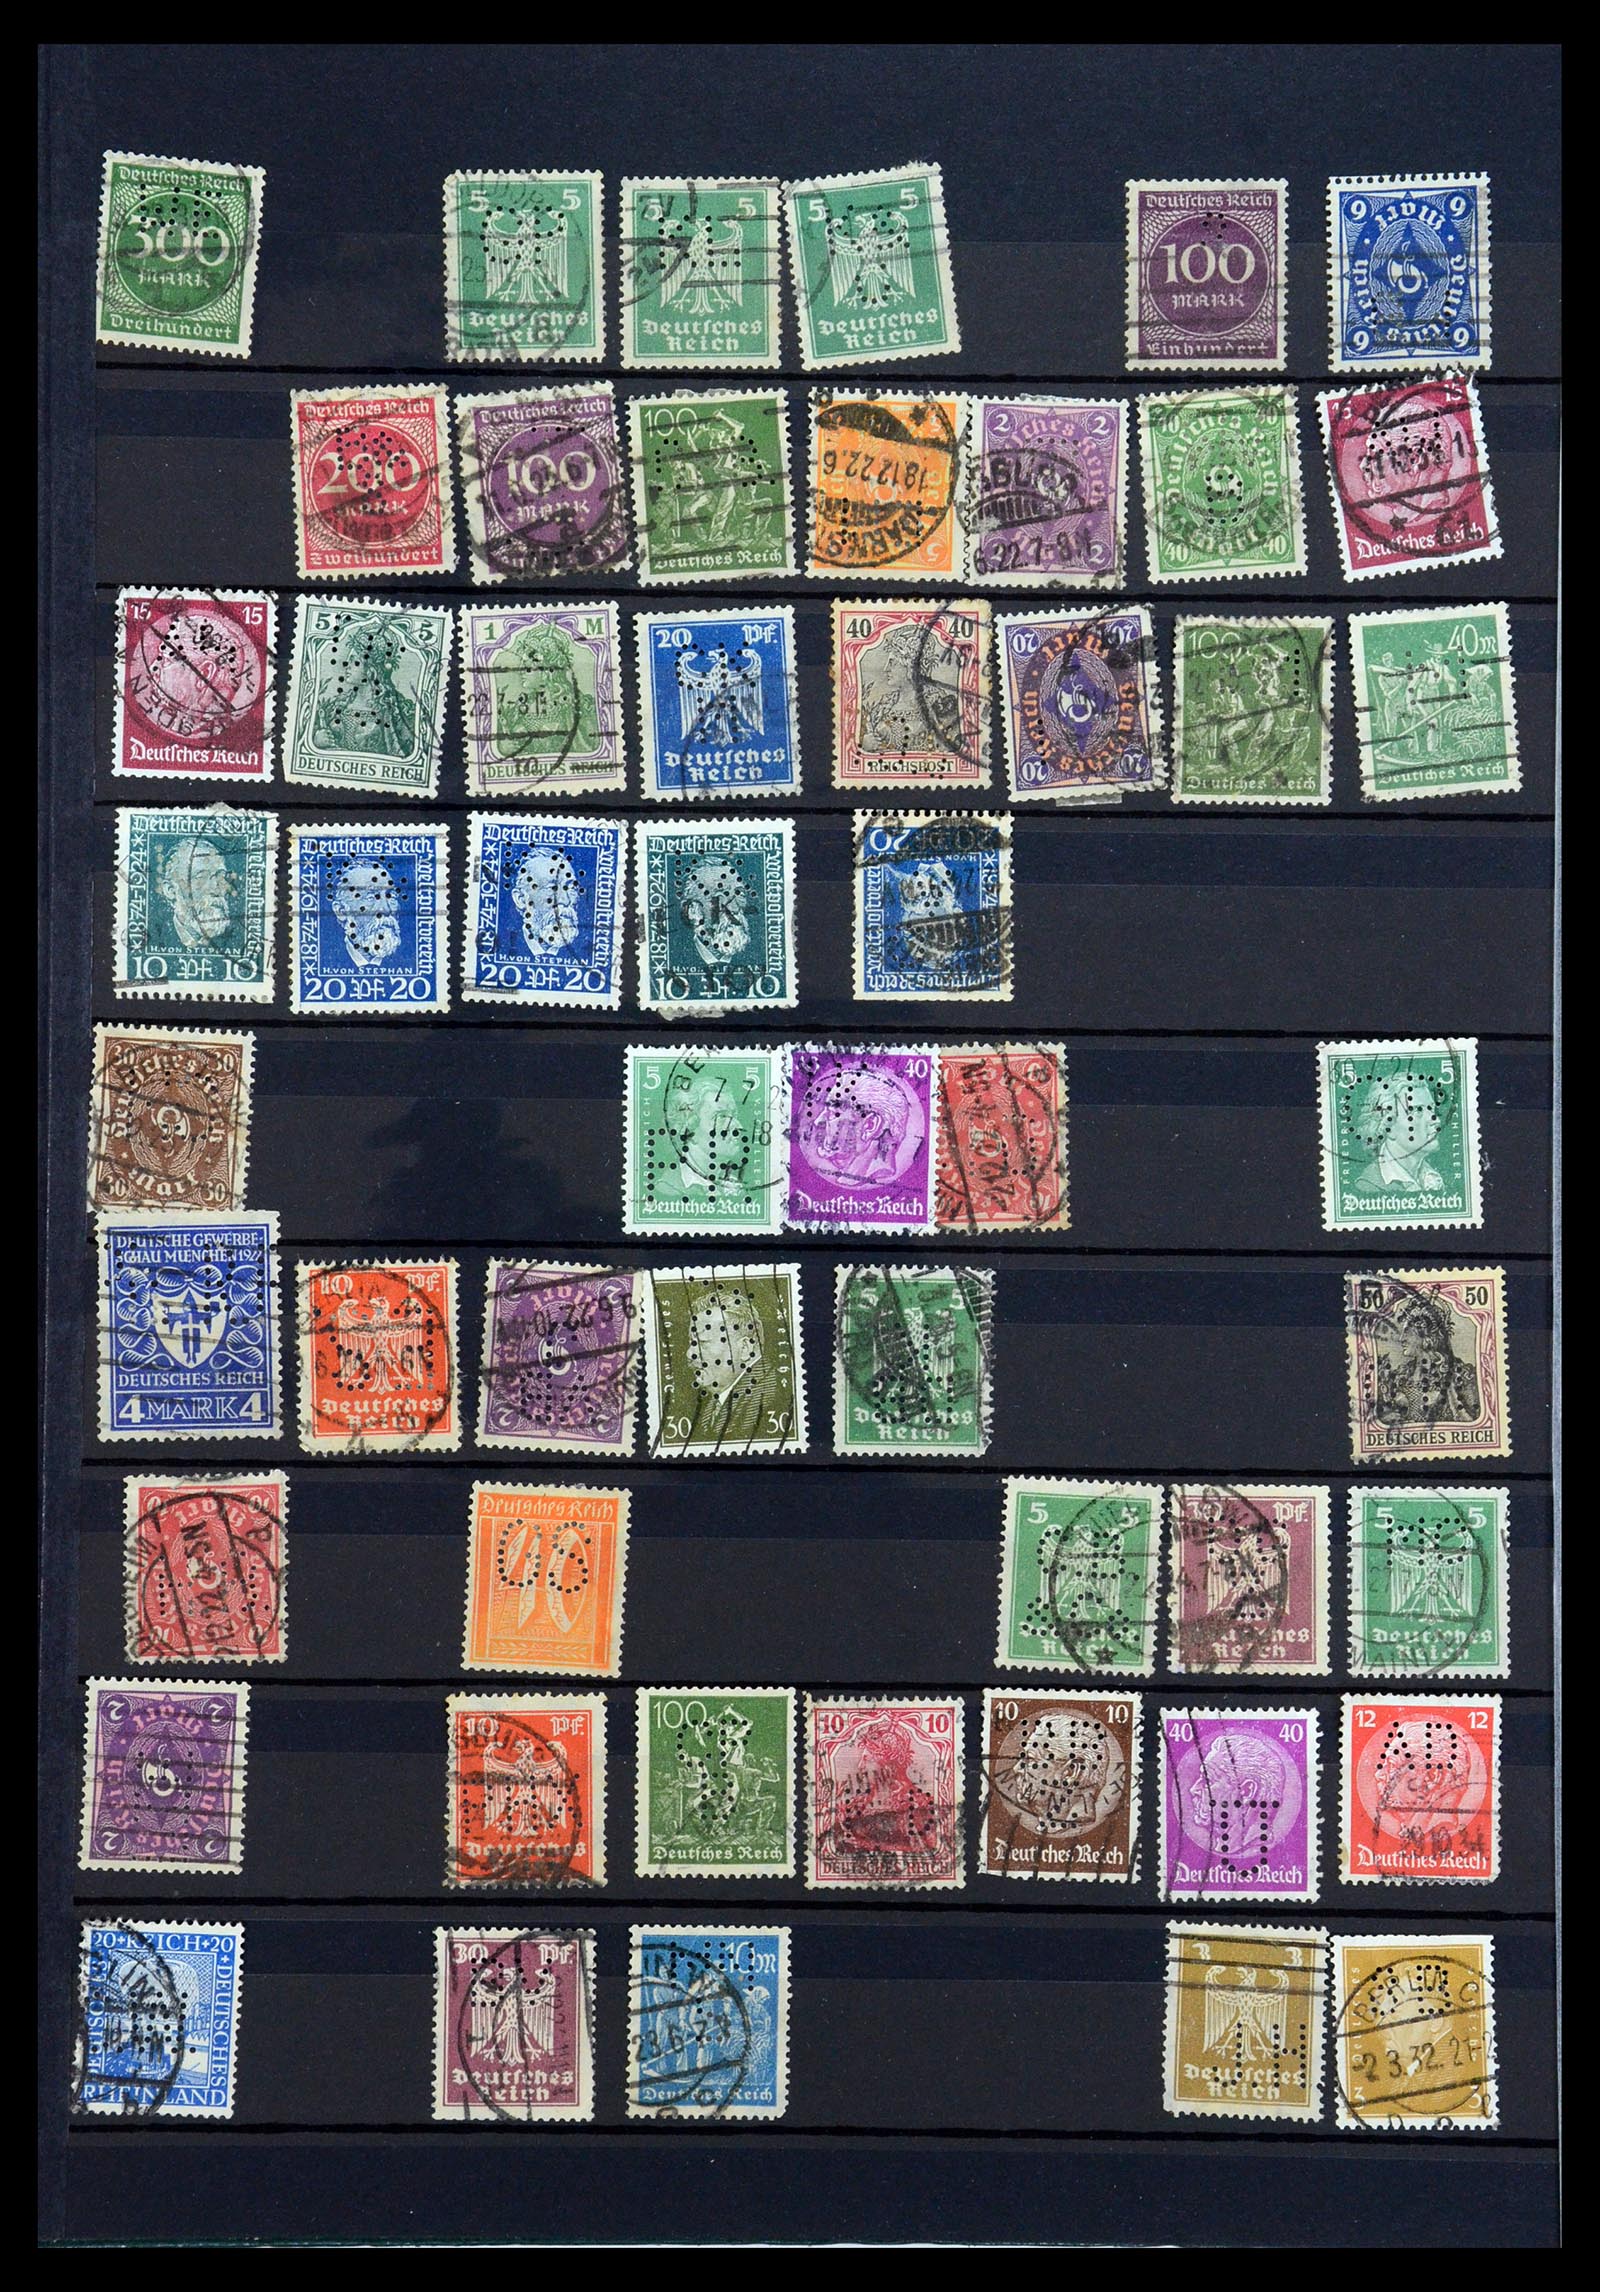 35183 020 - Stamp Collection 35183 German Reich perfins 1880-1945.